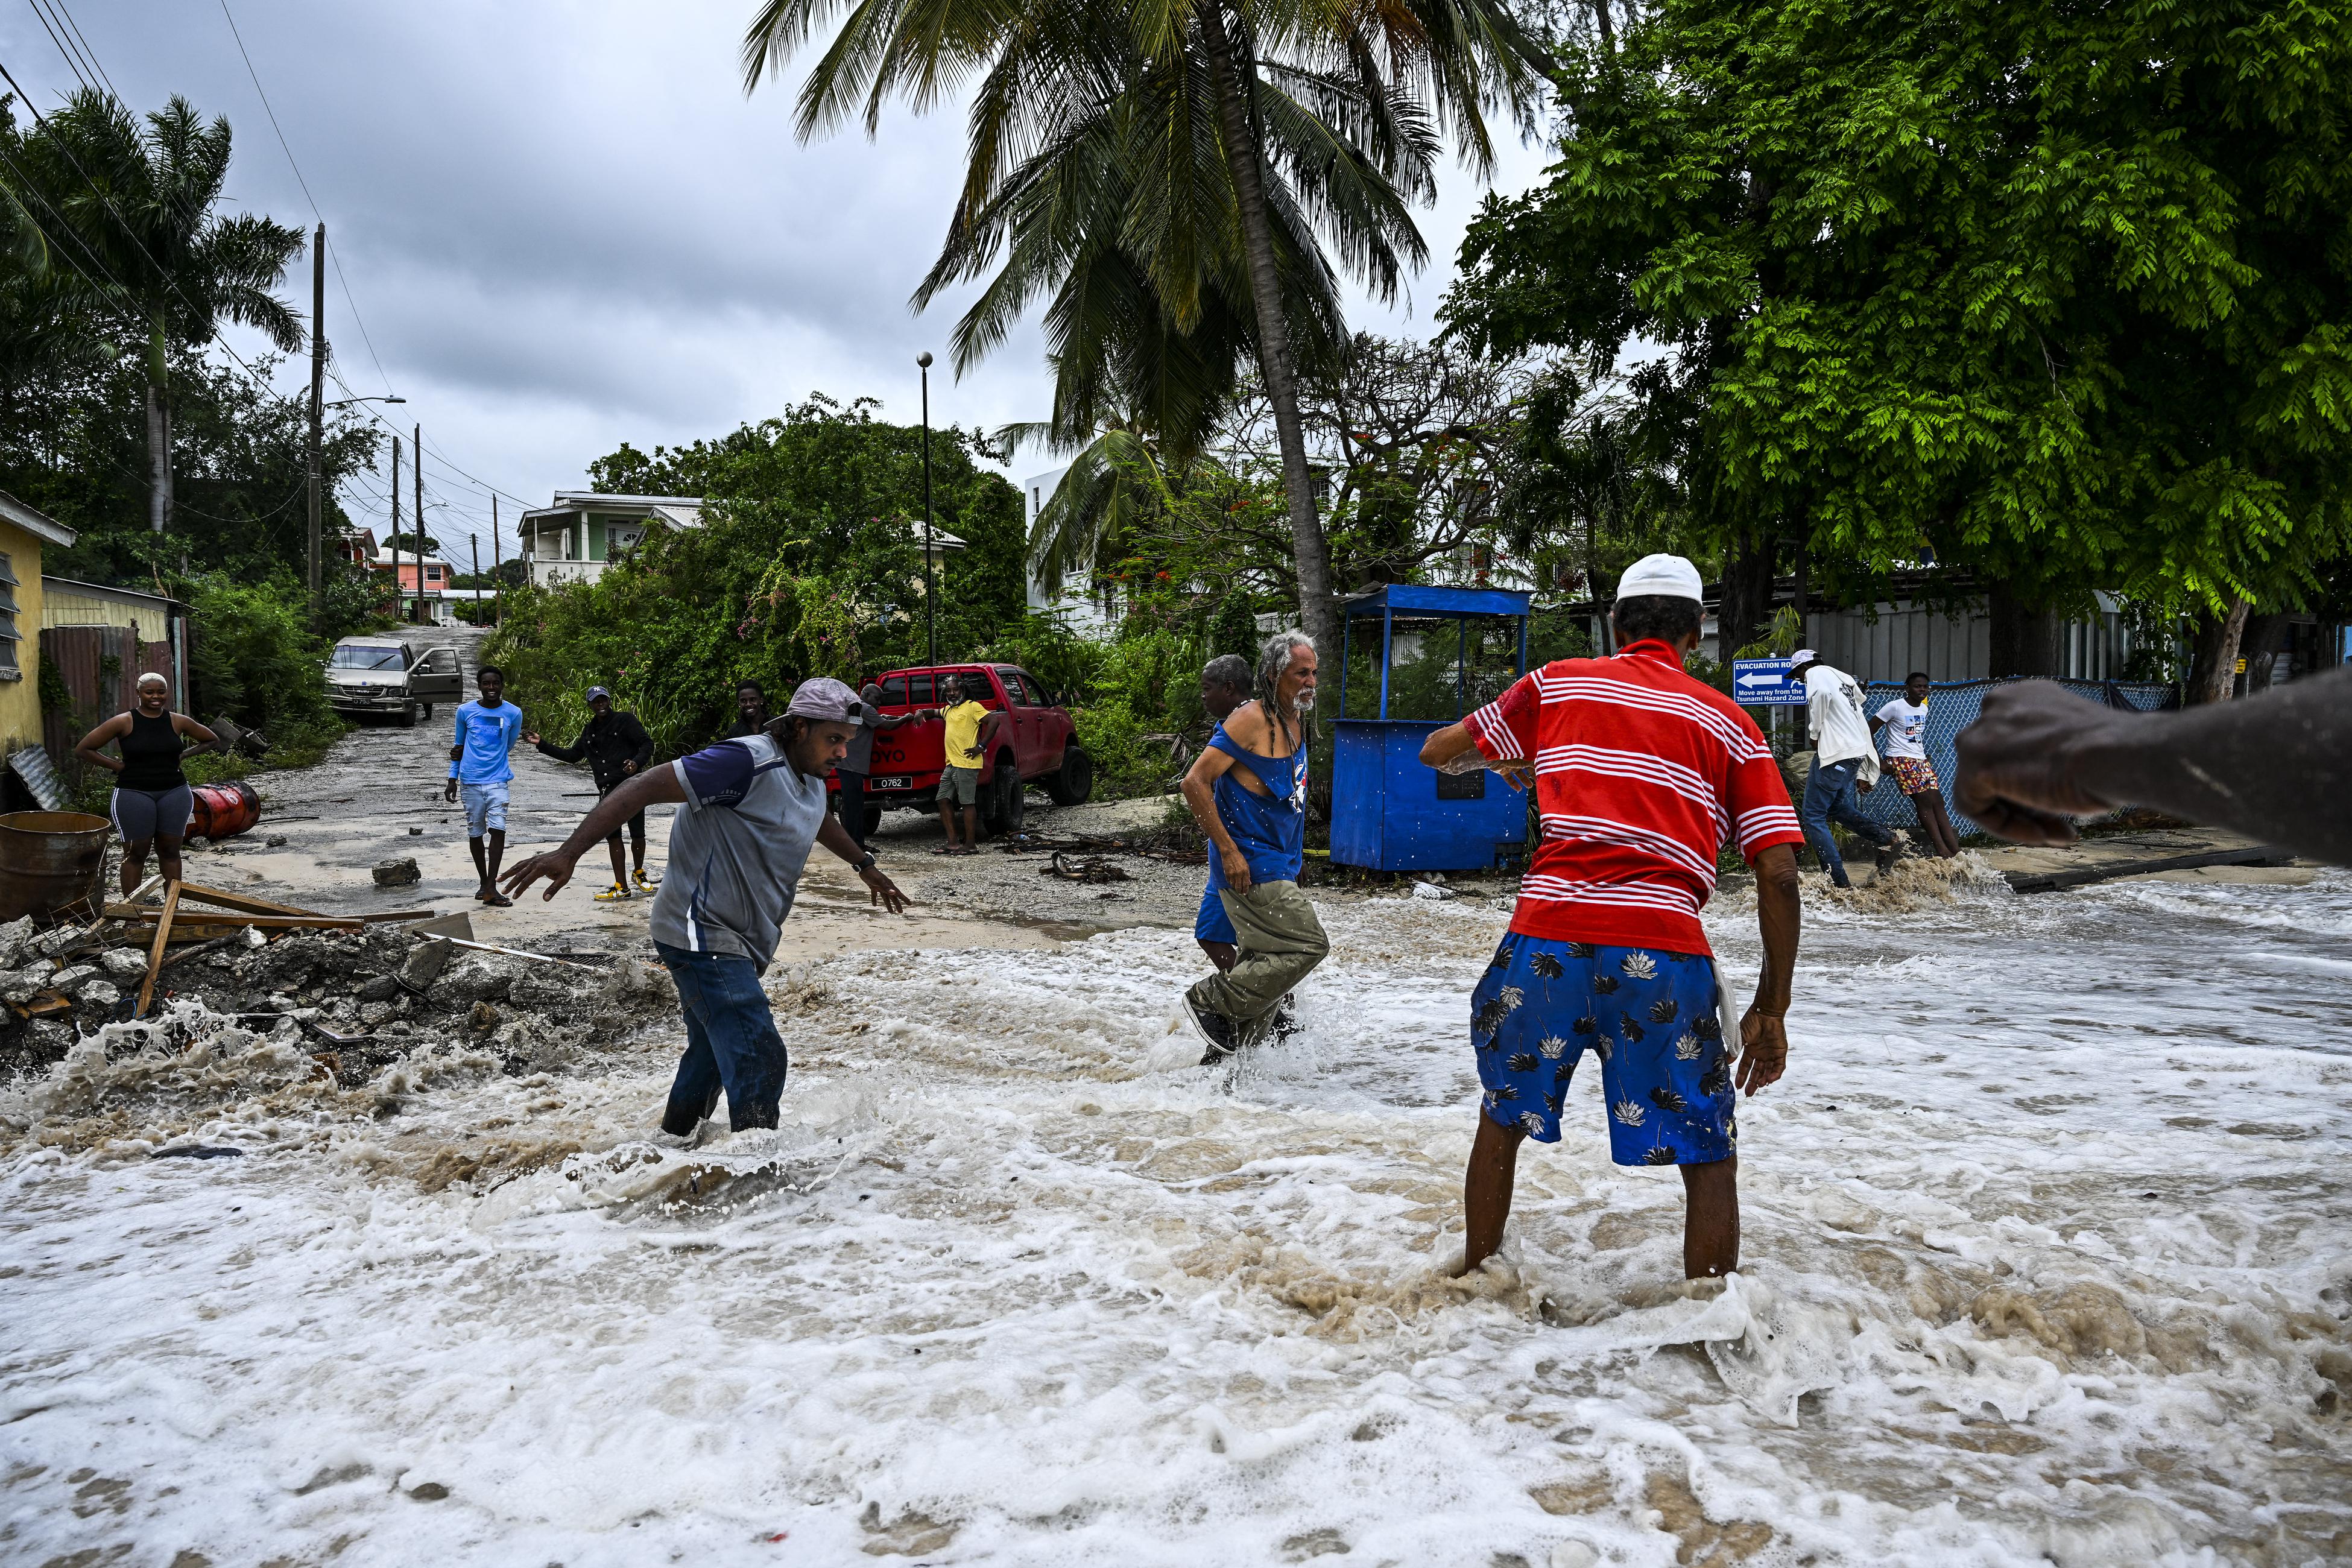 Uragano Beryl devasta i Caraibi - almeno 7 morti 